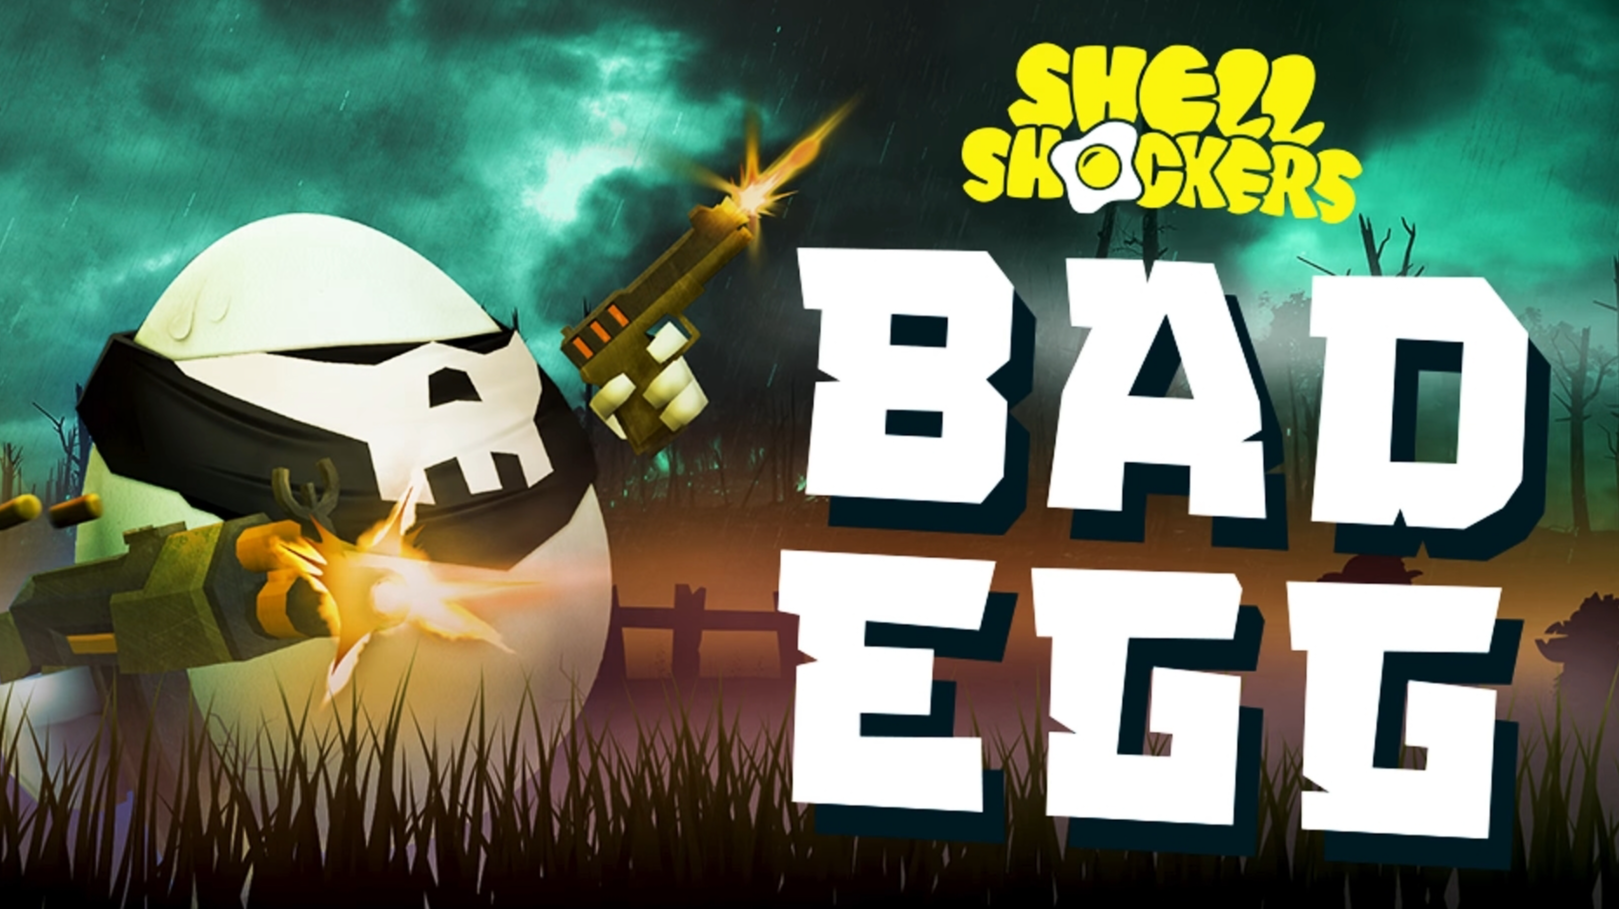 egg shooting game